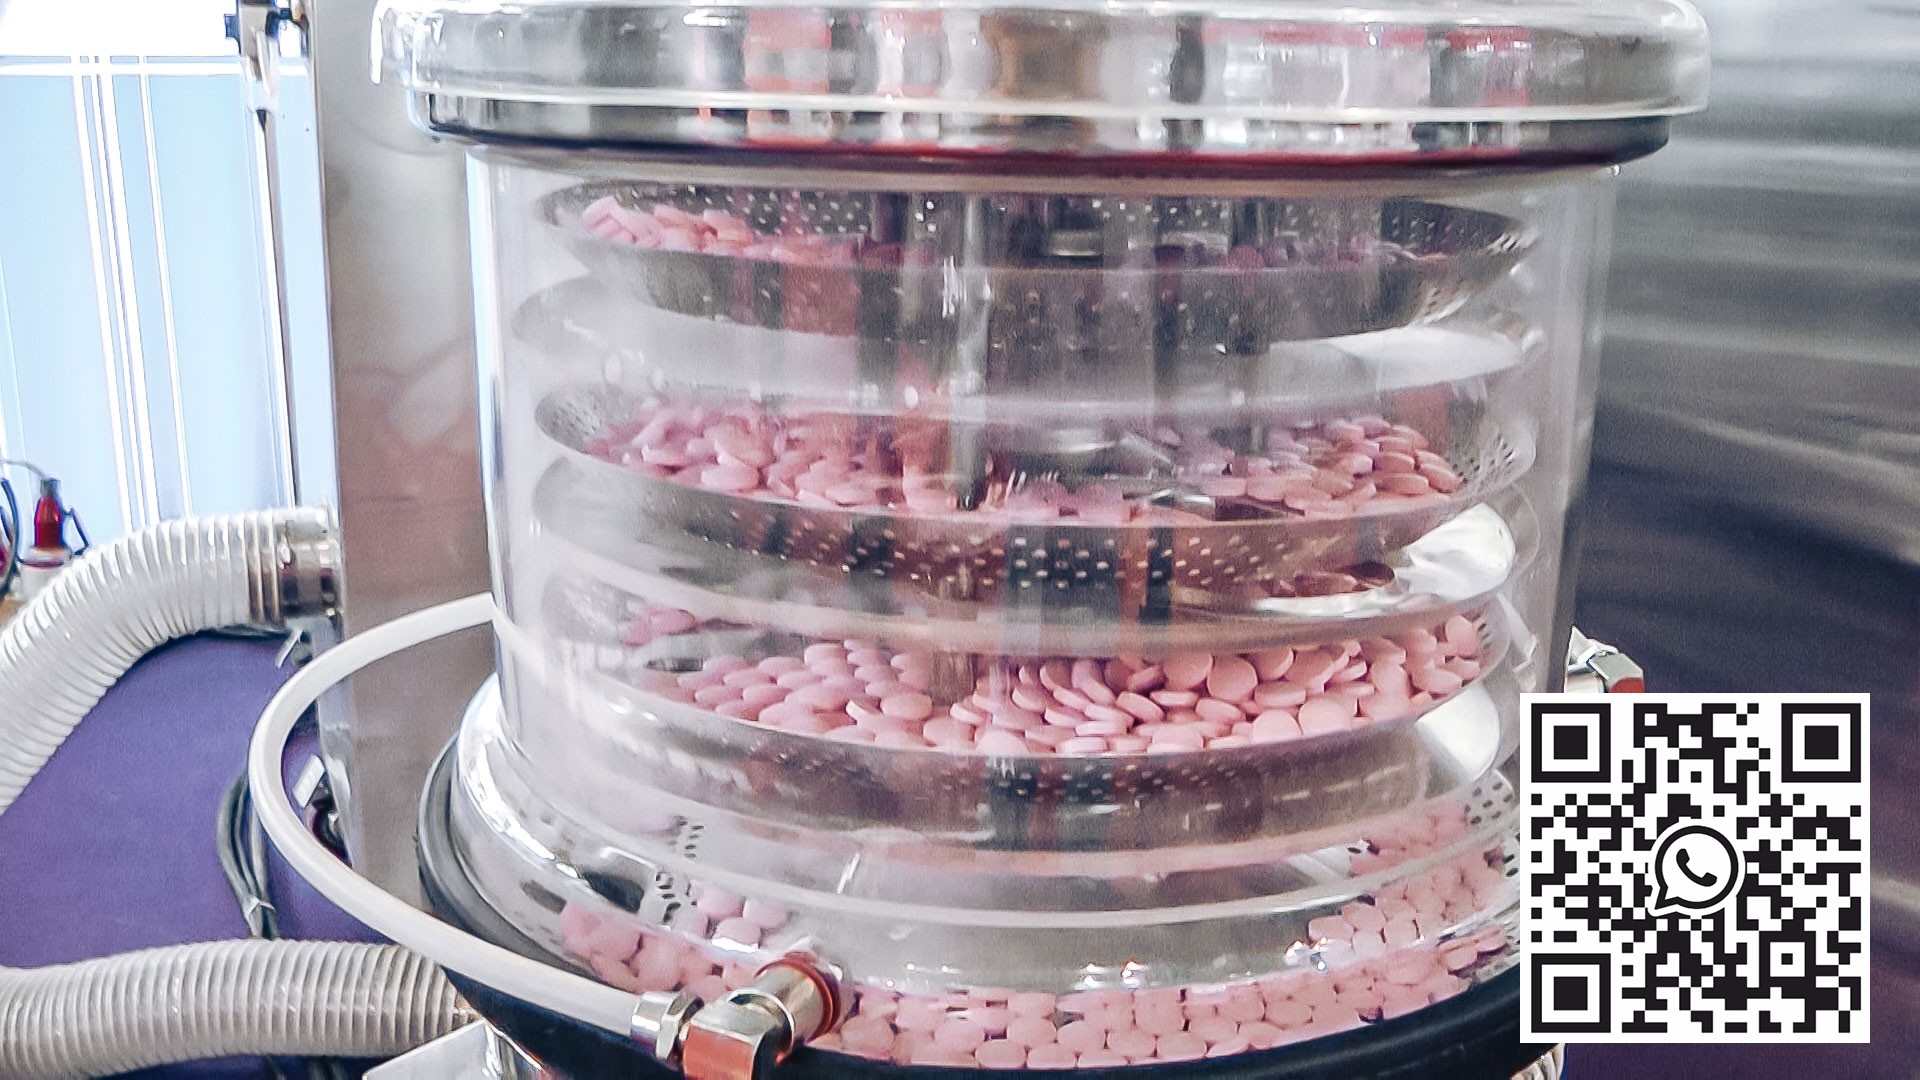 Equipo automático para desempolvar y pulir tabletas en la producción farmacéutica EE. UU.